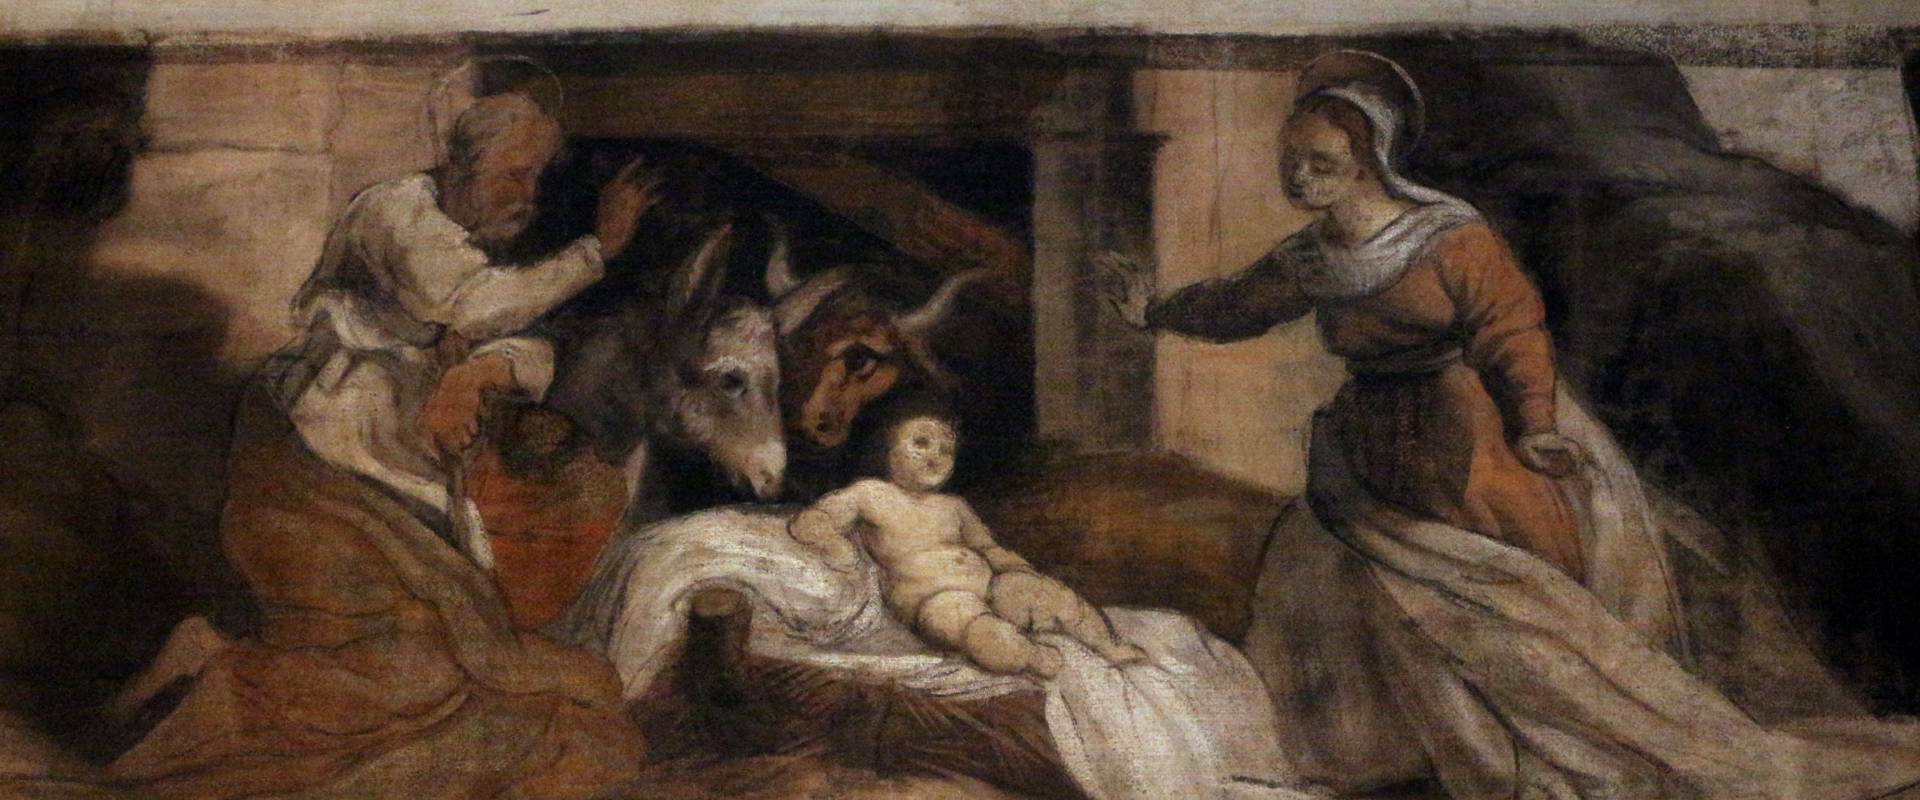 Giuseppe mazzuoli detto il bastardo, adorazione del bambino, 1579-80, dalla chiesa del gesù a ferrara 02 foto di Sailko